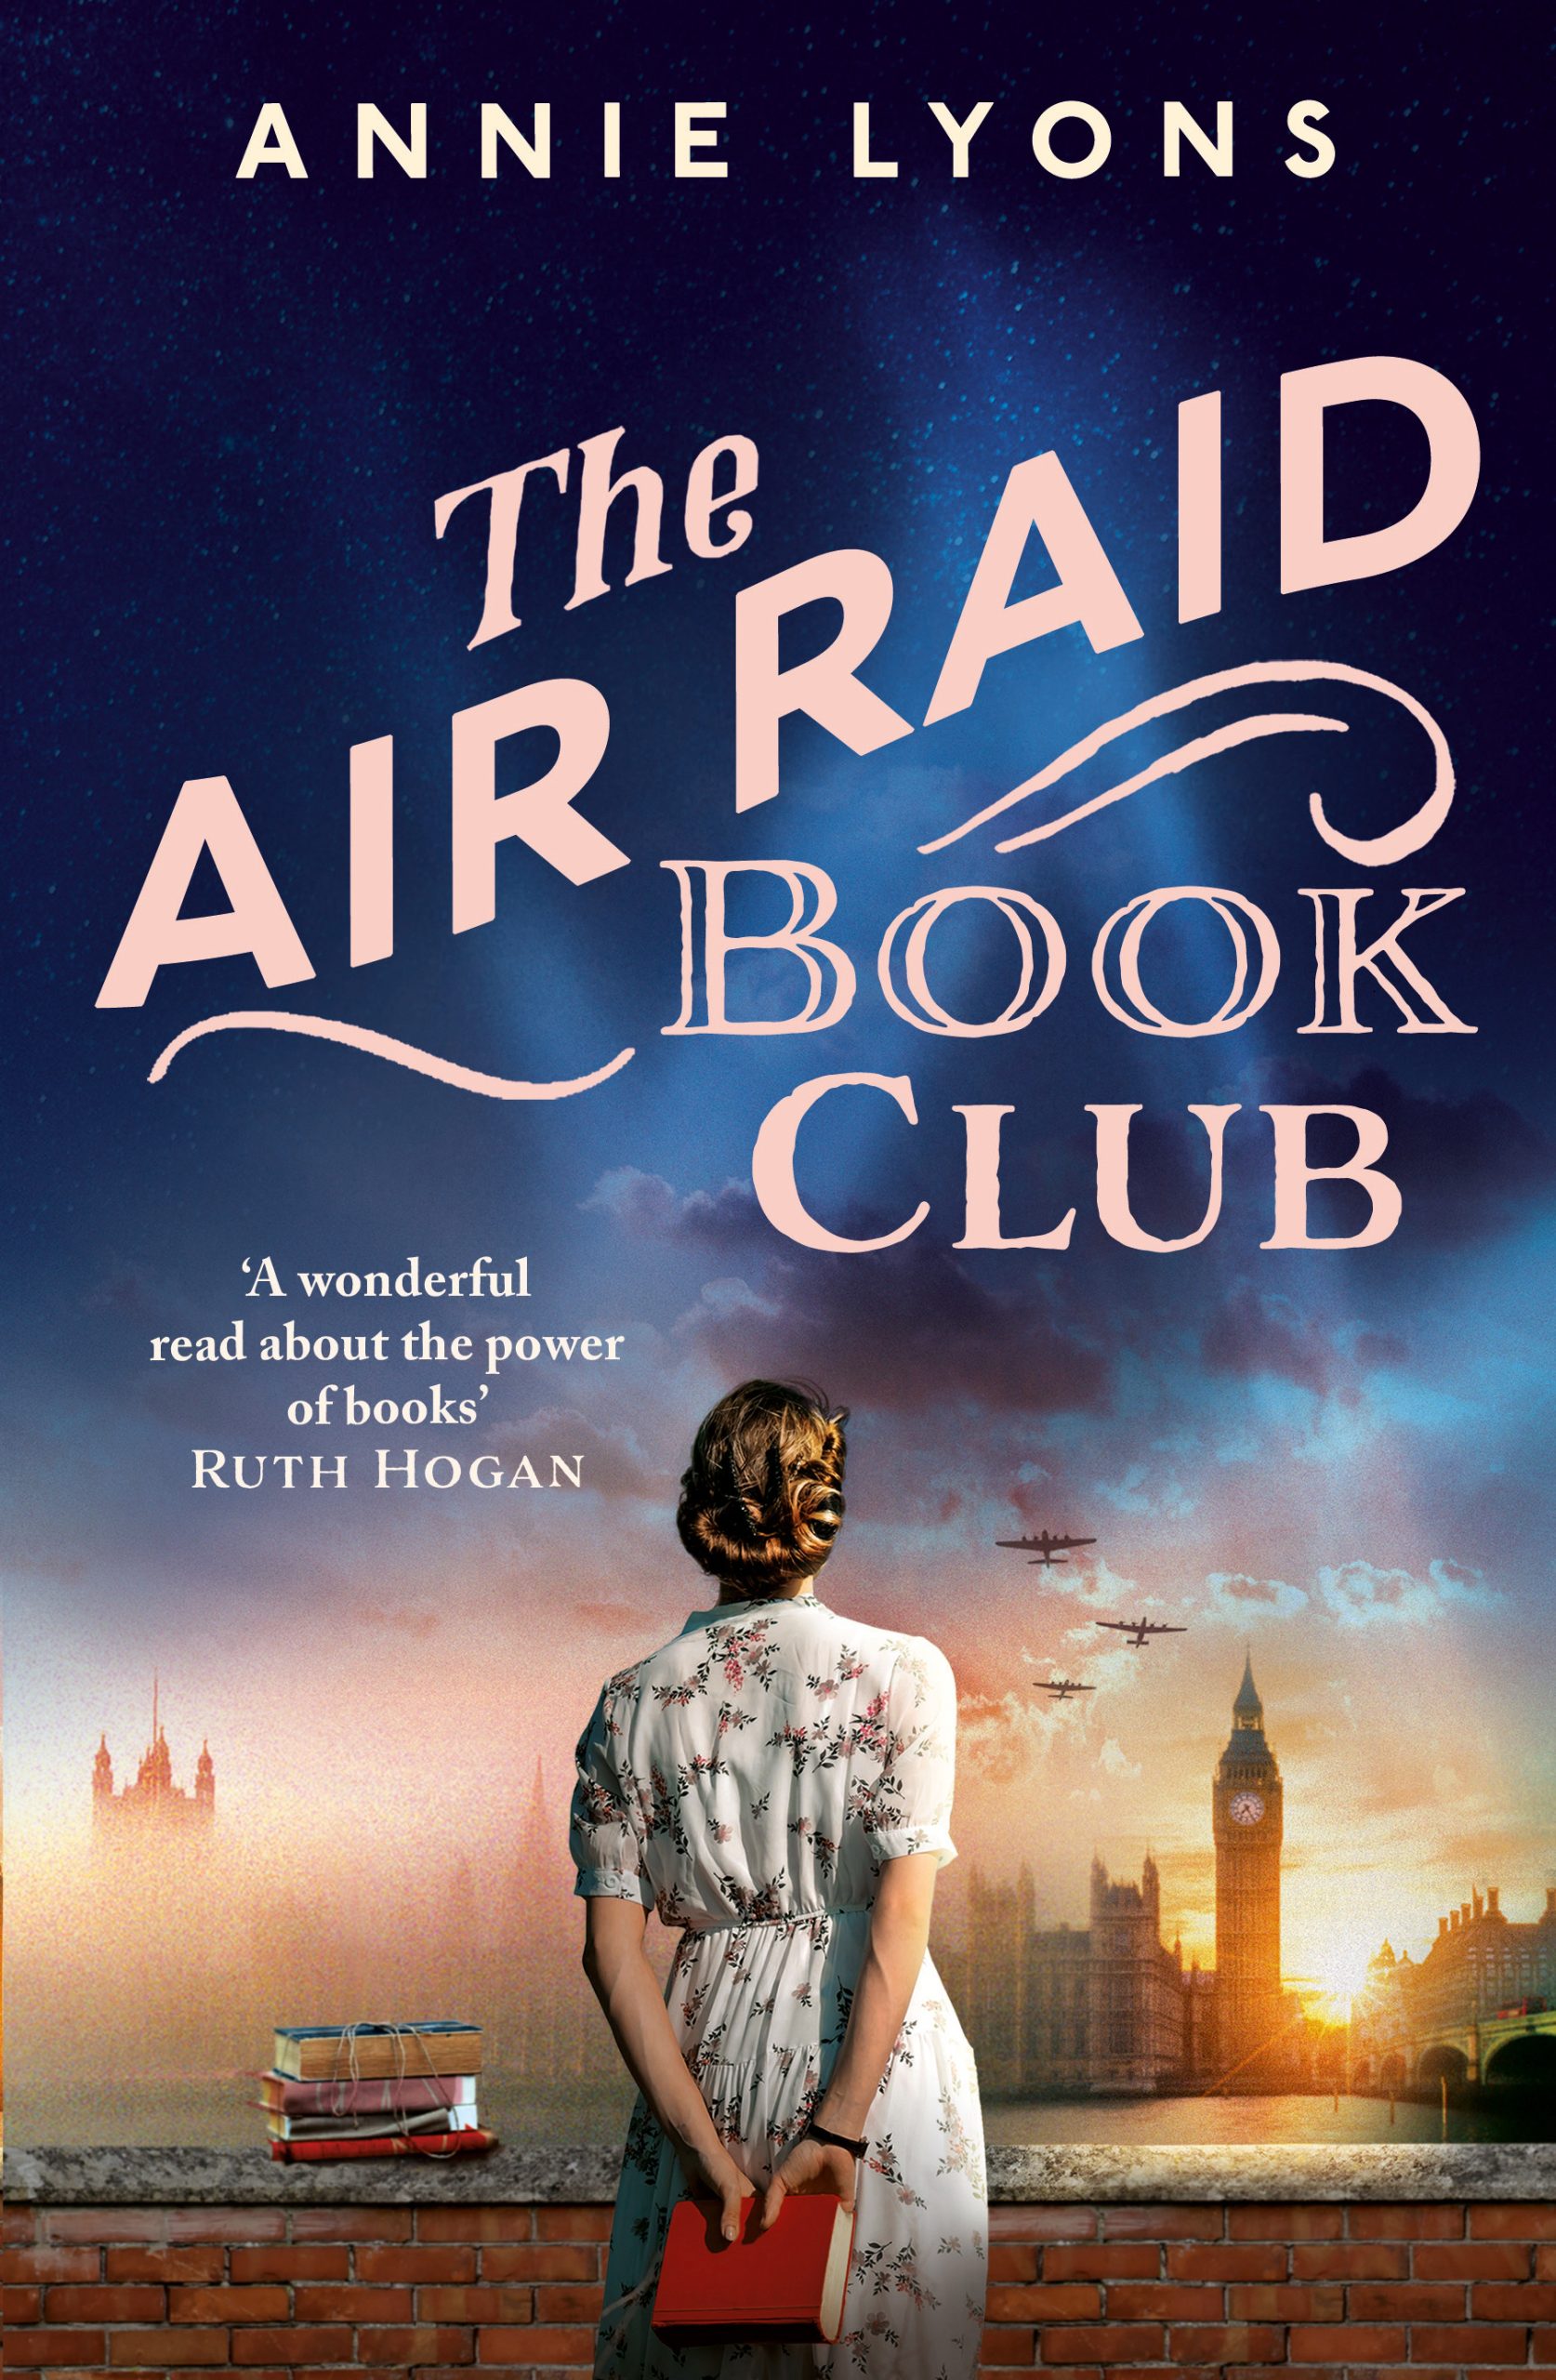 The air raid book club by Annie Lyons